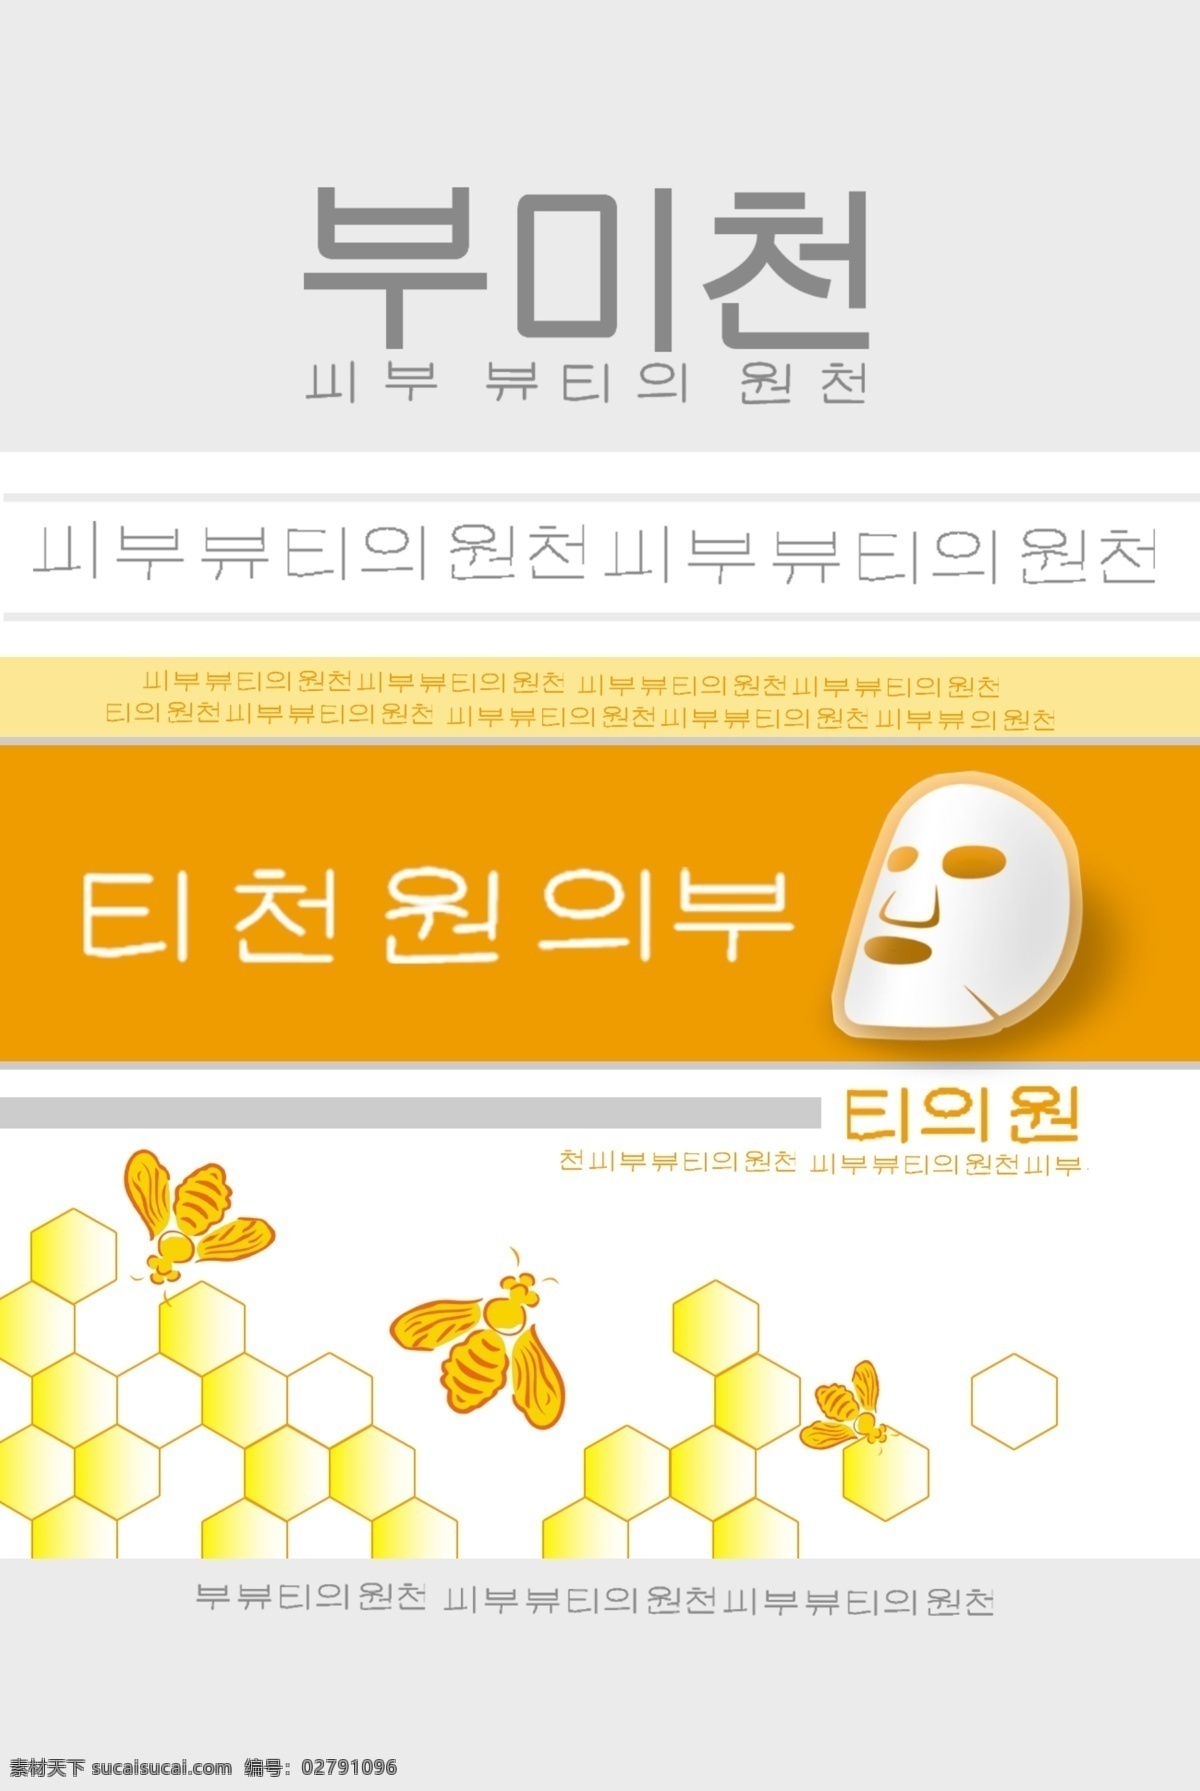 包装设计 广告设计模板 化妆品 蜜蜂 面膜包装 源文件 面膜 包装 模板下载 韩国面膜 面膜贴 蜜蜂面膜 psd源文件